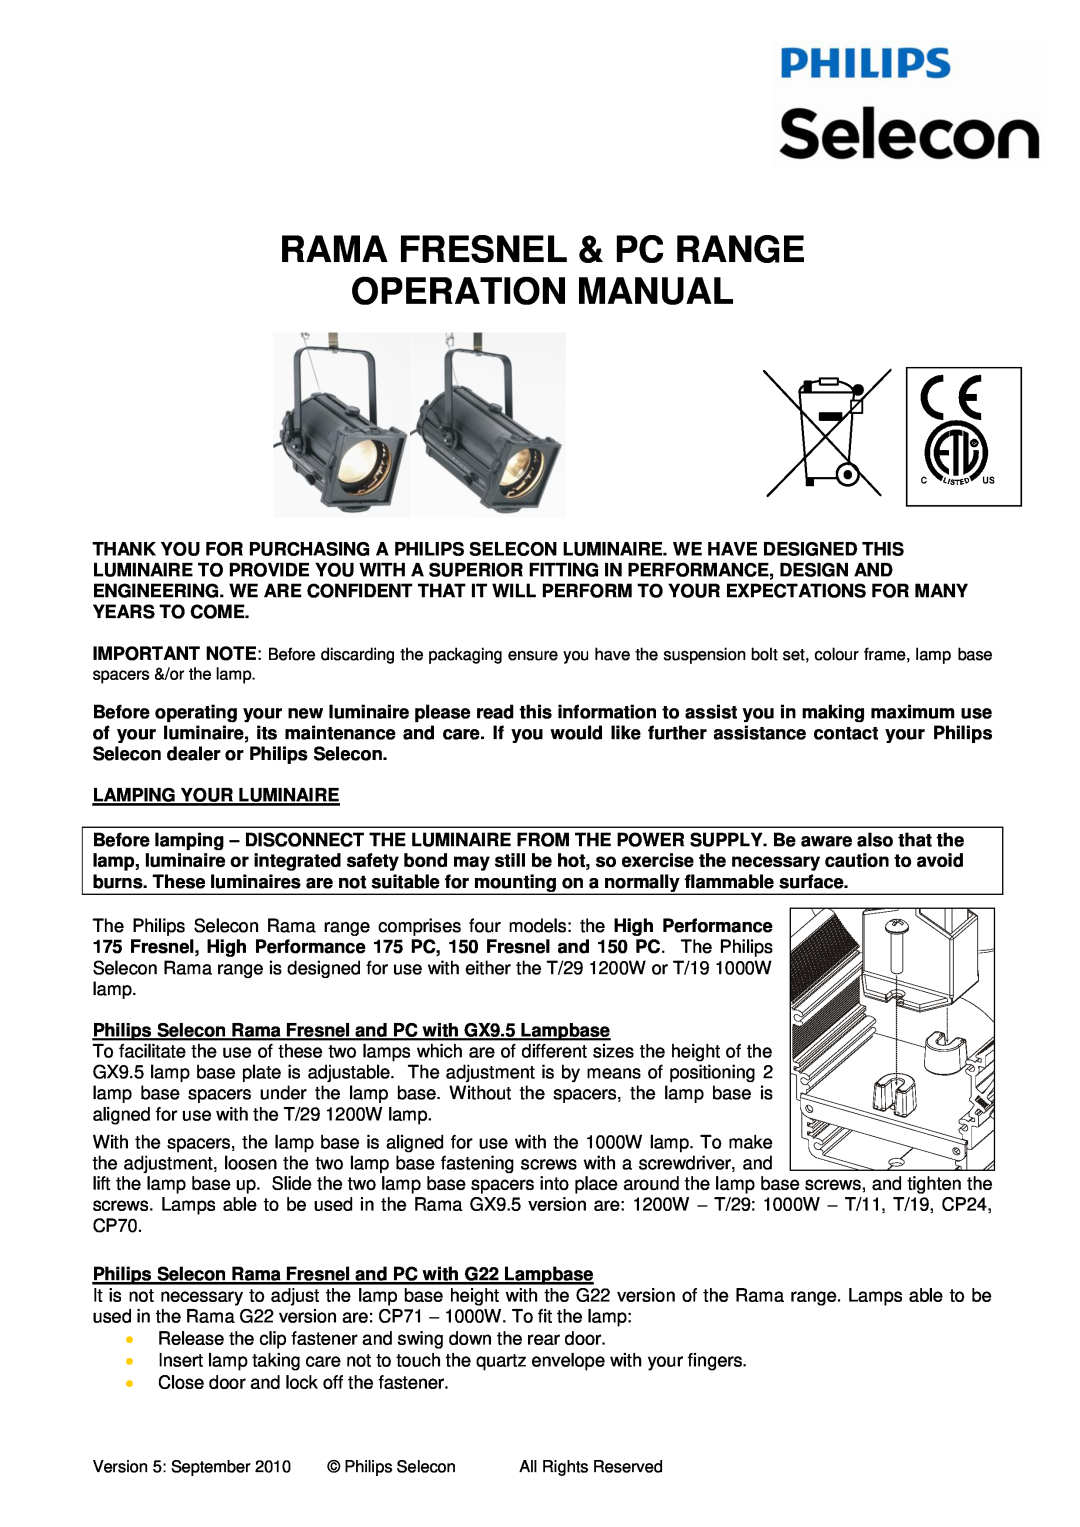 Philips RAMA FRESNEL & PC RANGE operation manual 